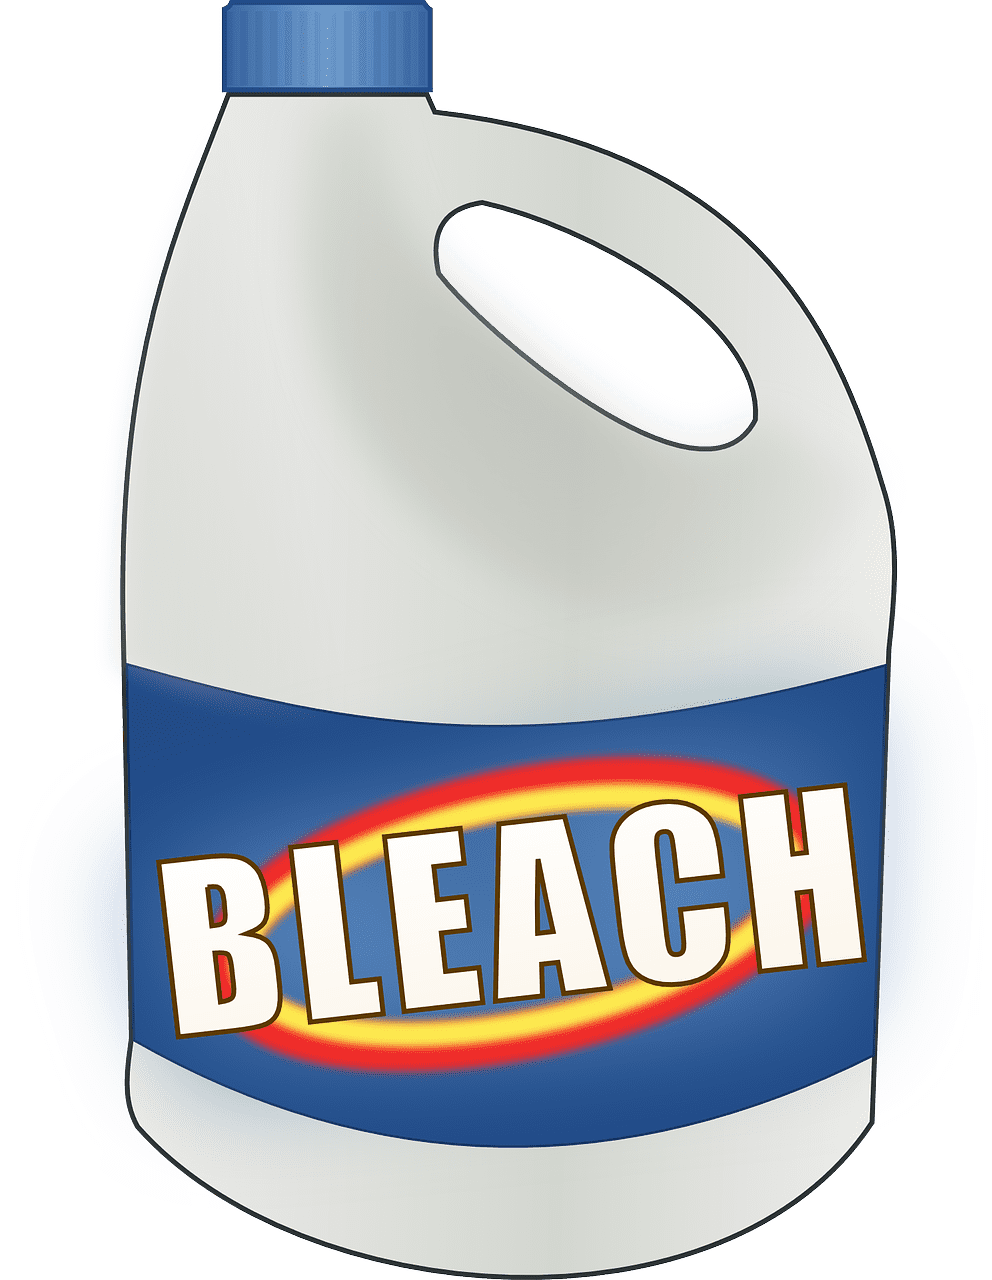 bleach